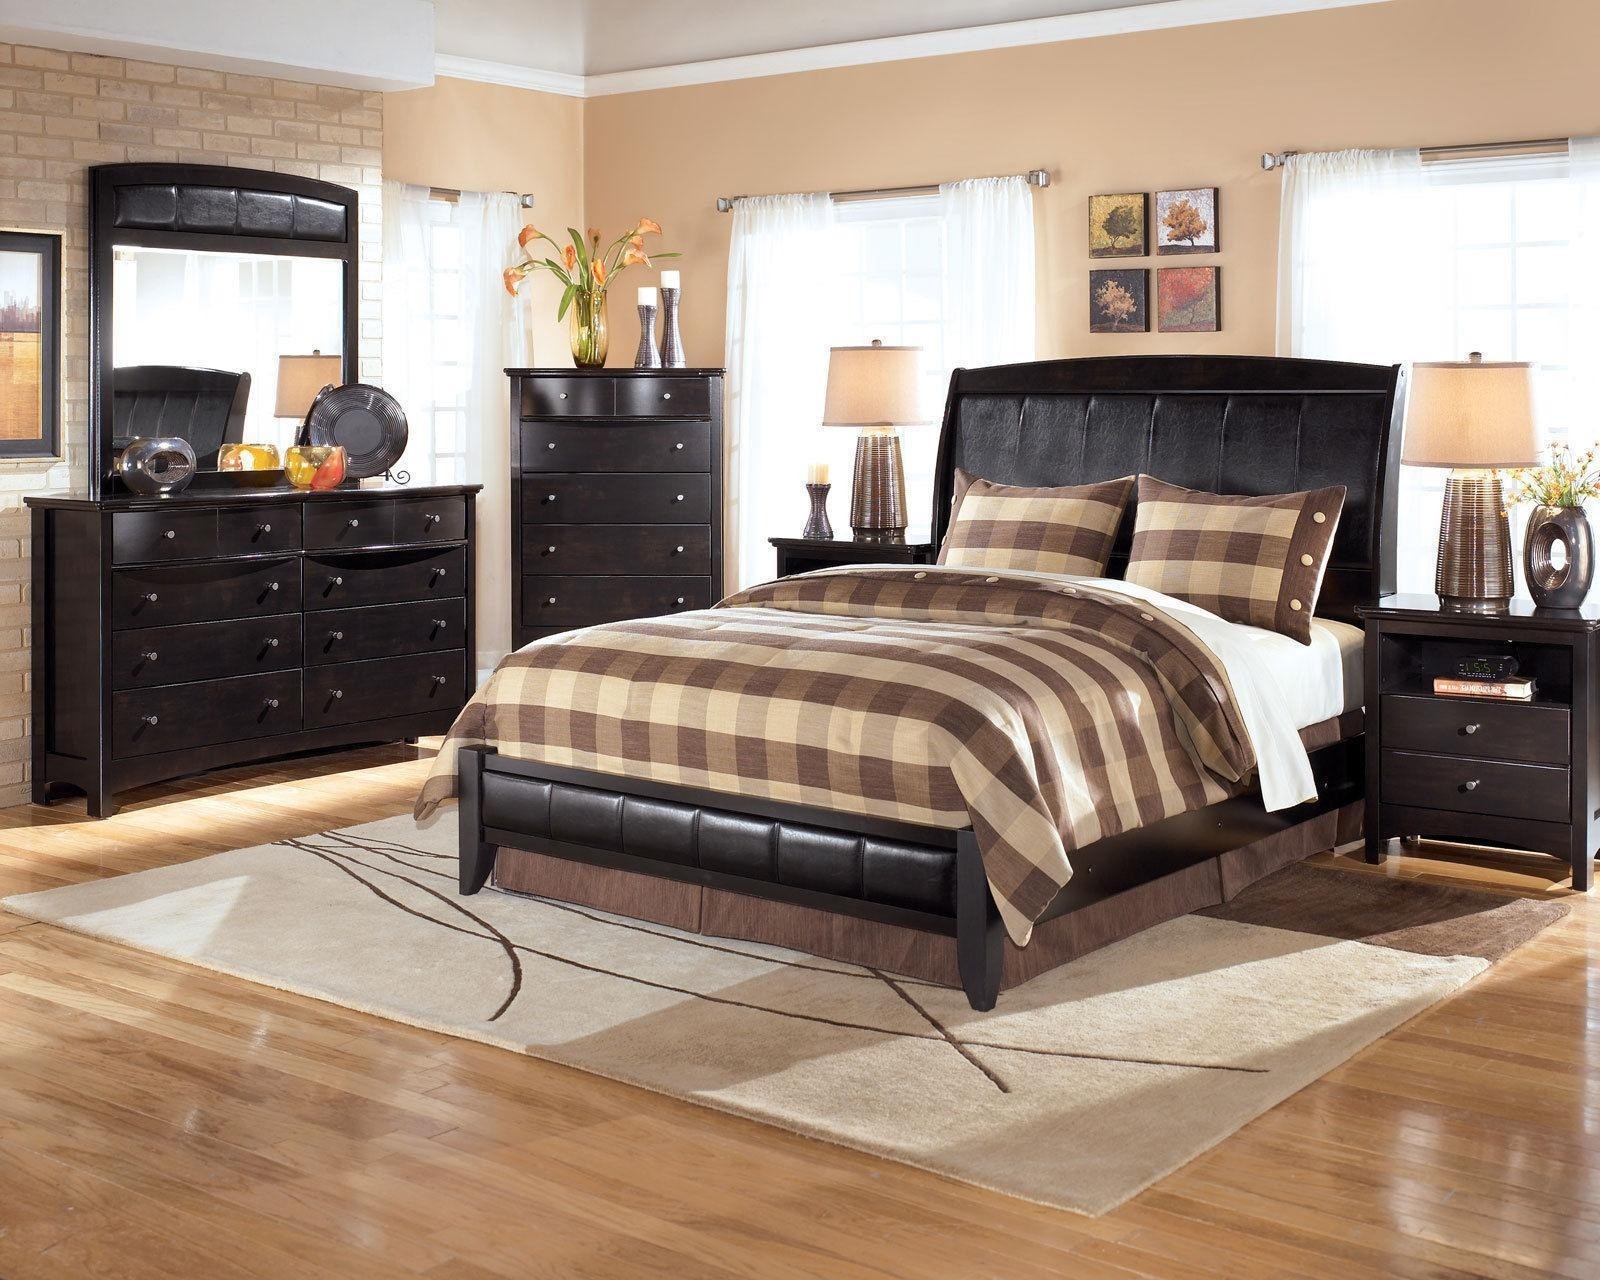 Celine 5 pieces black bedroom set furniture w king size